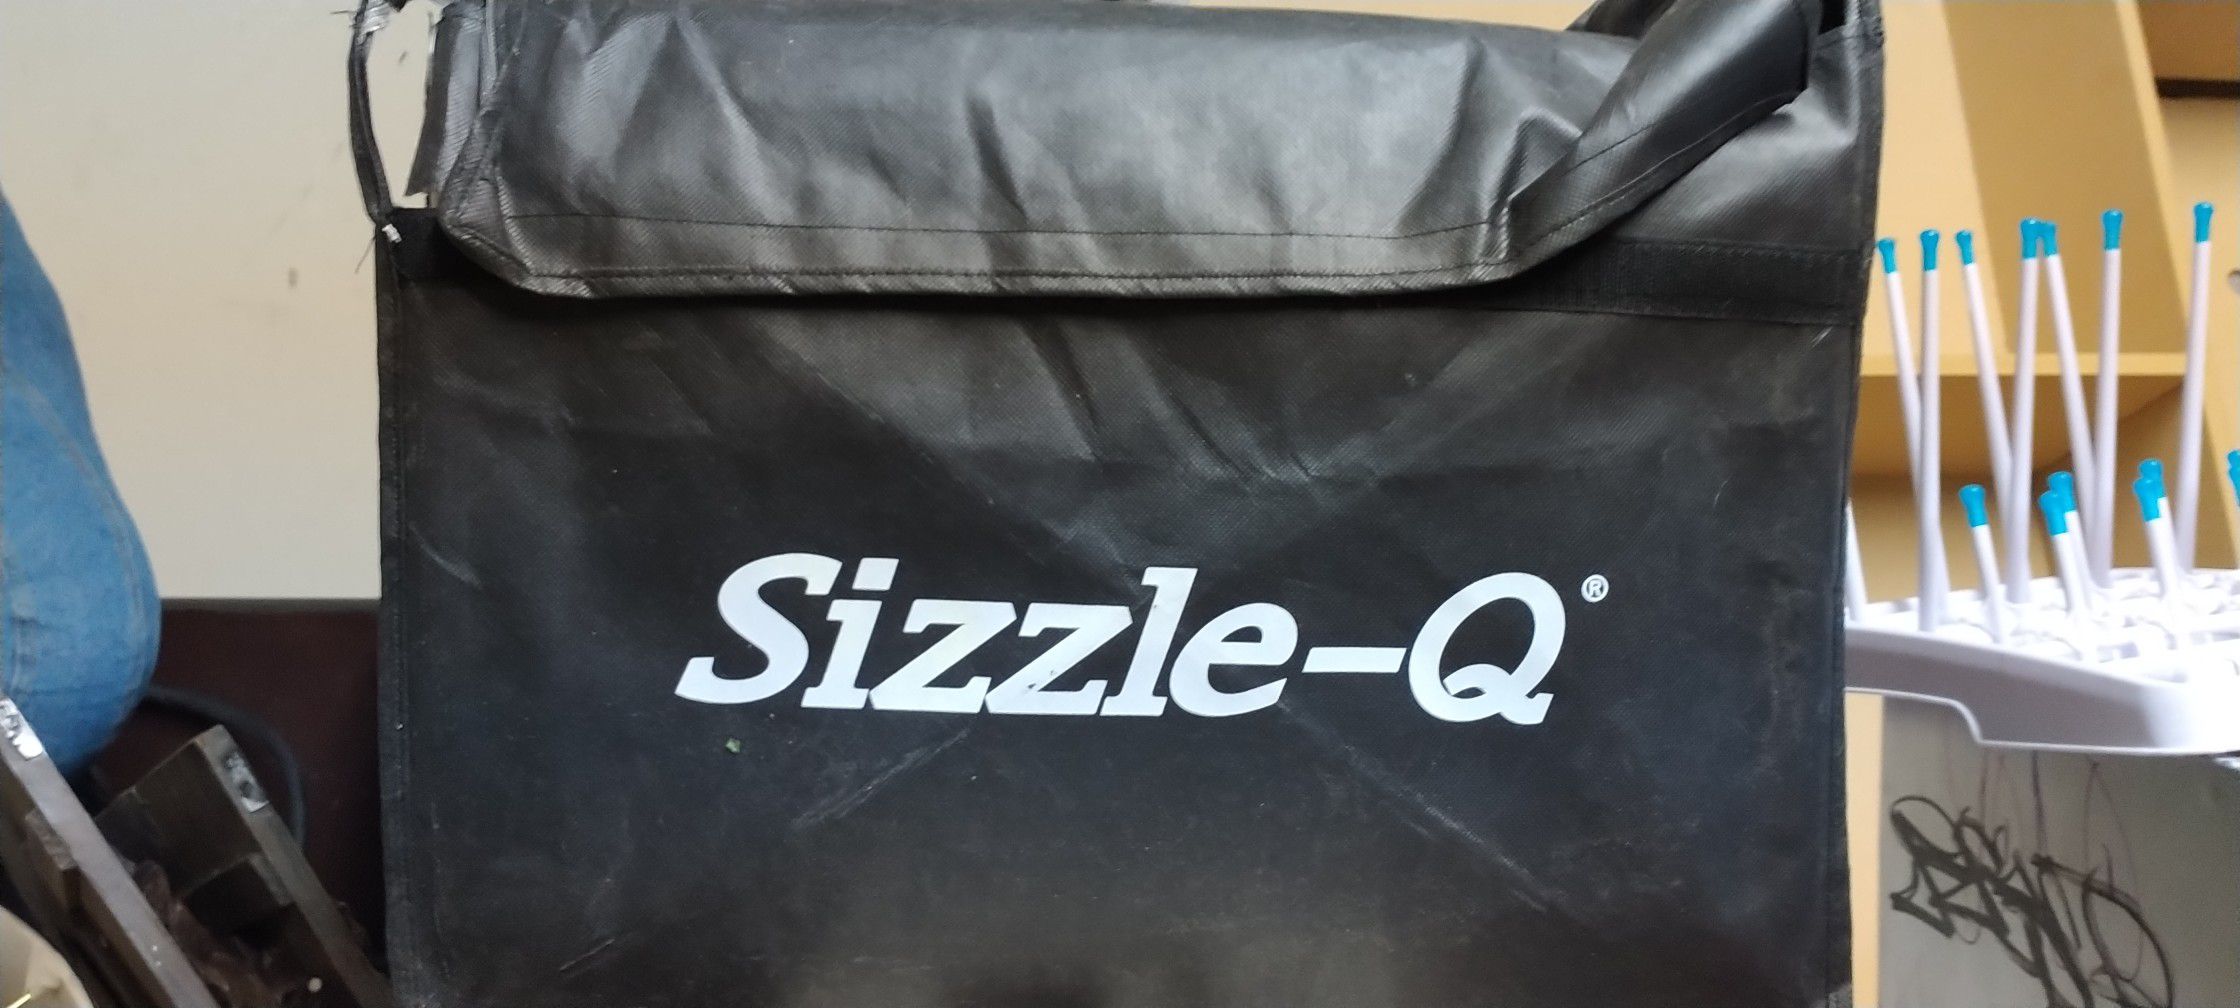 Sizzle Q